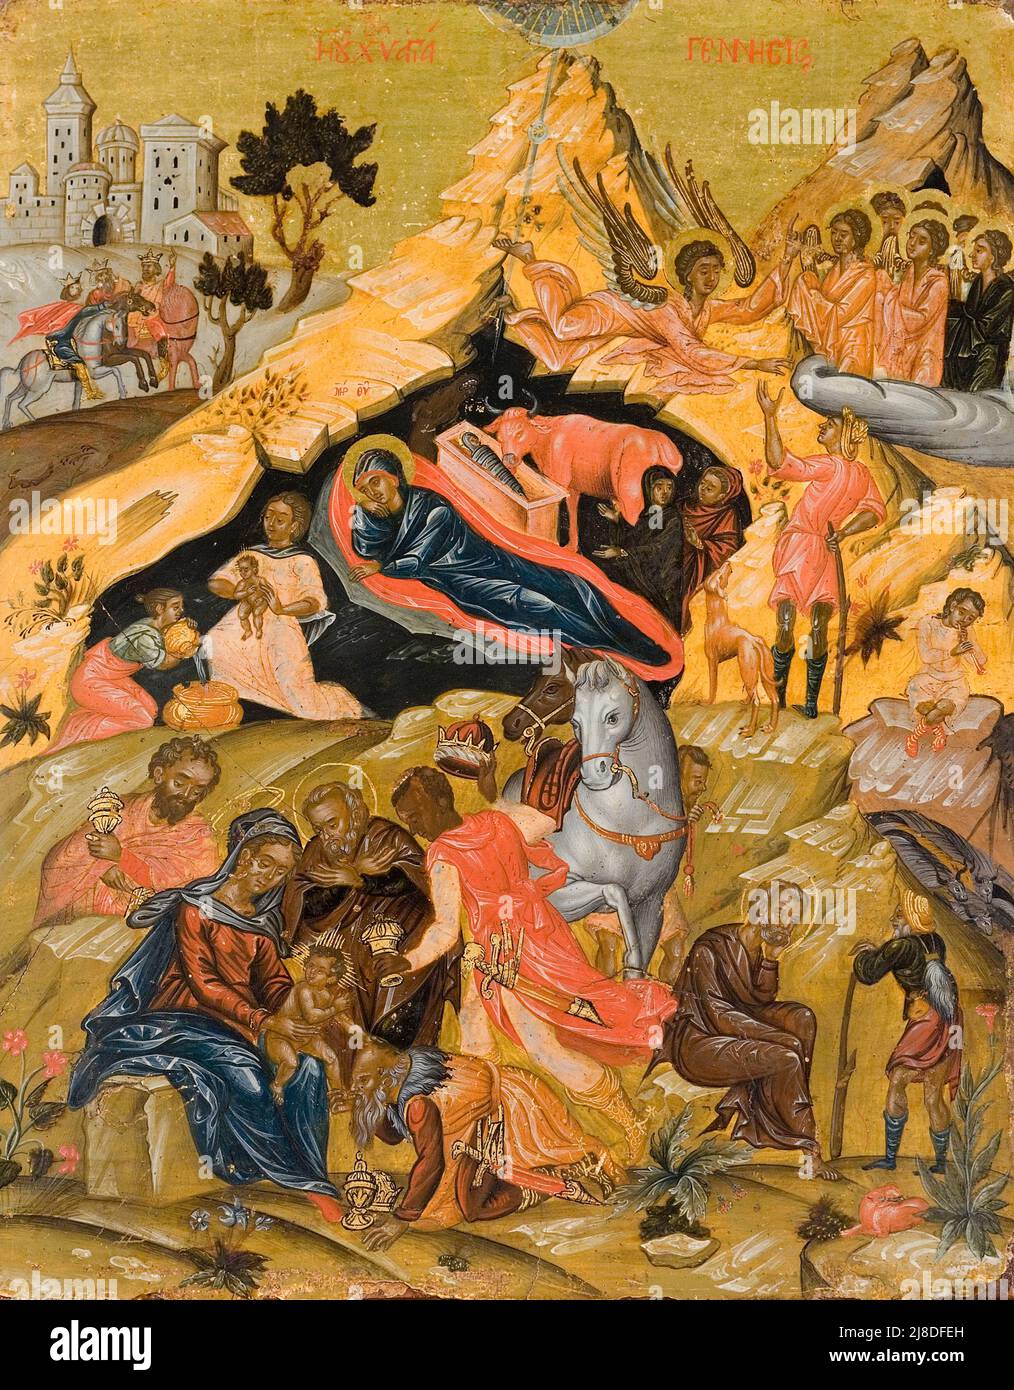 L'Adorazione dei Magi da un'icona cretese. In questo mito cristiano tre saggi uomini o re vengono a visitare il neonato gesù e lo riconoscono come messia e figlio di dio. Foto Stock